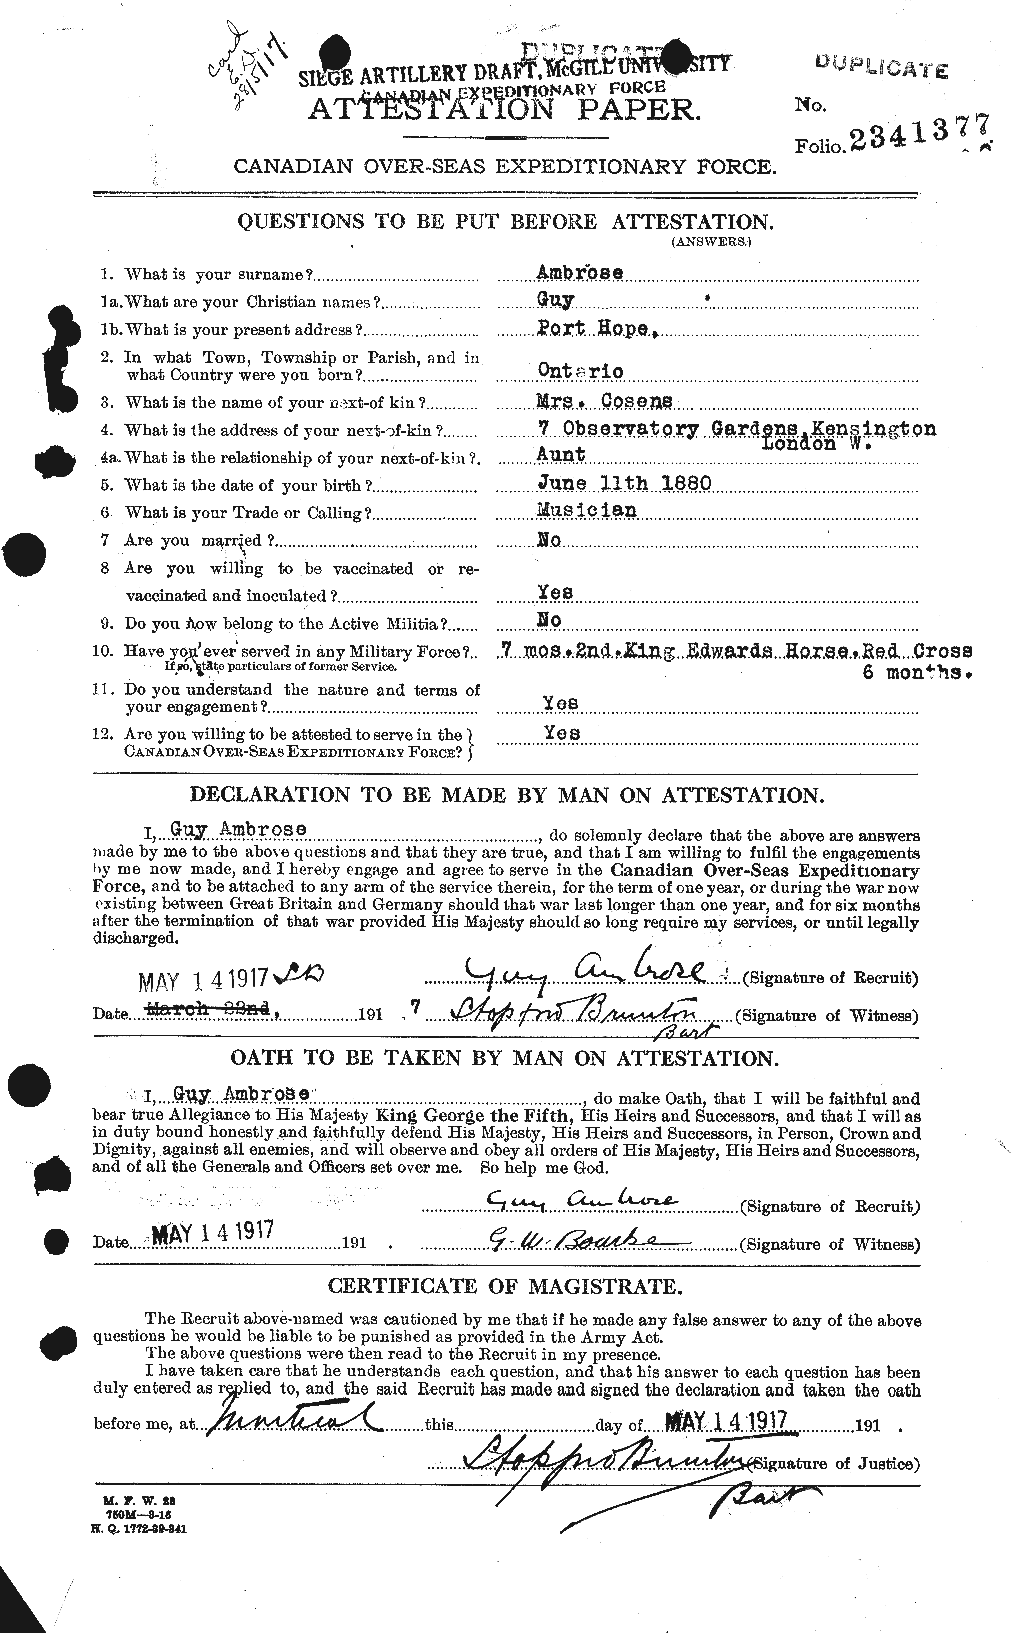 Dossiers du Personnel de la Première Guerre mondiale - CEC 208935a